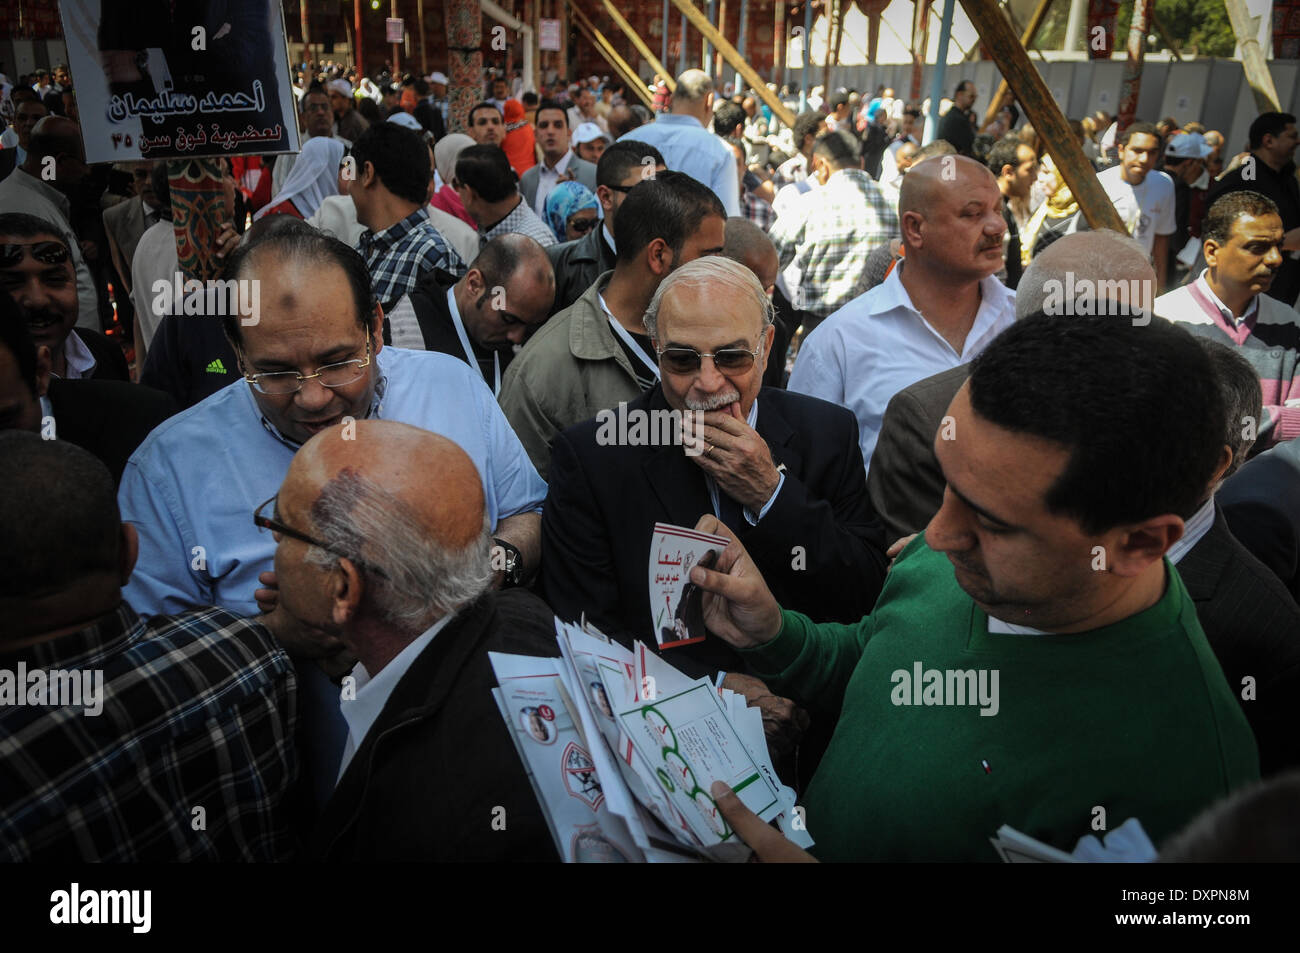 El Cairo, Egipto. 28 Mar, 2014. Las elecciones para la gestión de Egipto son dos de los principales clubes de fútbol, Ahly y Zamalek, tuvo lugar el viernes en medio de la controversia en torno a la injerencia del gobierno en el fútbol. Las elecciones tuvieron lugar en un 'extremadamente difícil'' contexto, escribió el periódico de propiedad privada Al-Shorouk, sugiriendo que esto resulte una pesada carga para los ganadores al hombro. Crédito: Zuma Press, Inc./Alamy Live News Foto de stock